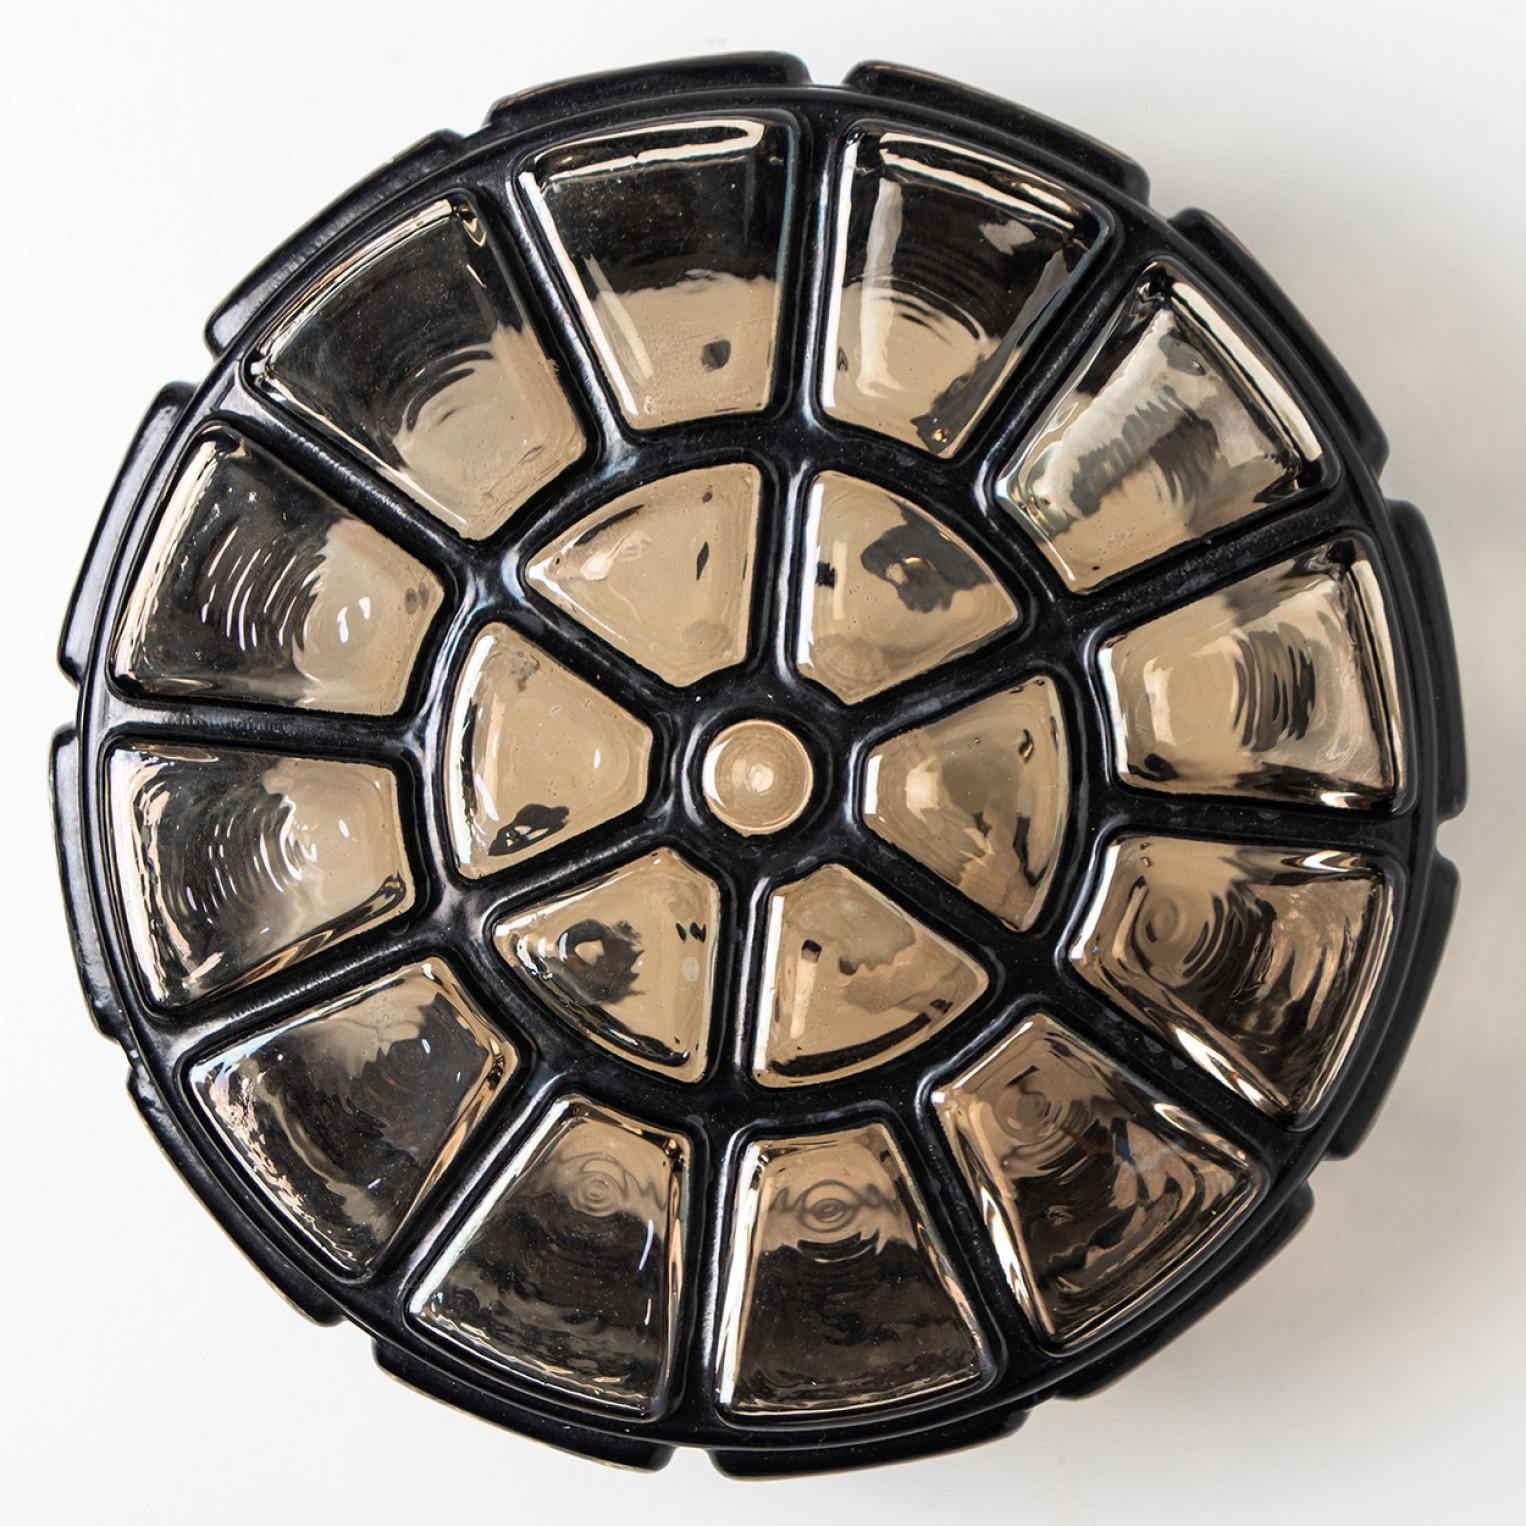 Une merveilleuse boîte d'encastrement ronde en fer, vers 1970, fabriquée par Glashütte Limburg, Allemagne.
Avec du verre fumé soufflé à la main sur une base en laiton et une structure en forme de cage en fer. Illumine magnifiquement.
Peut être monté